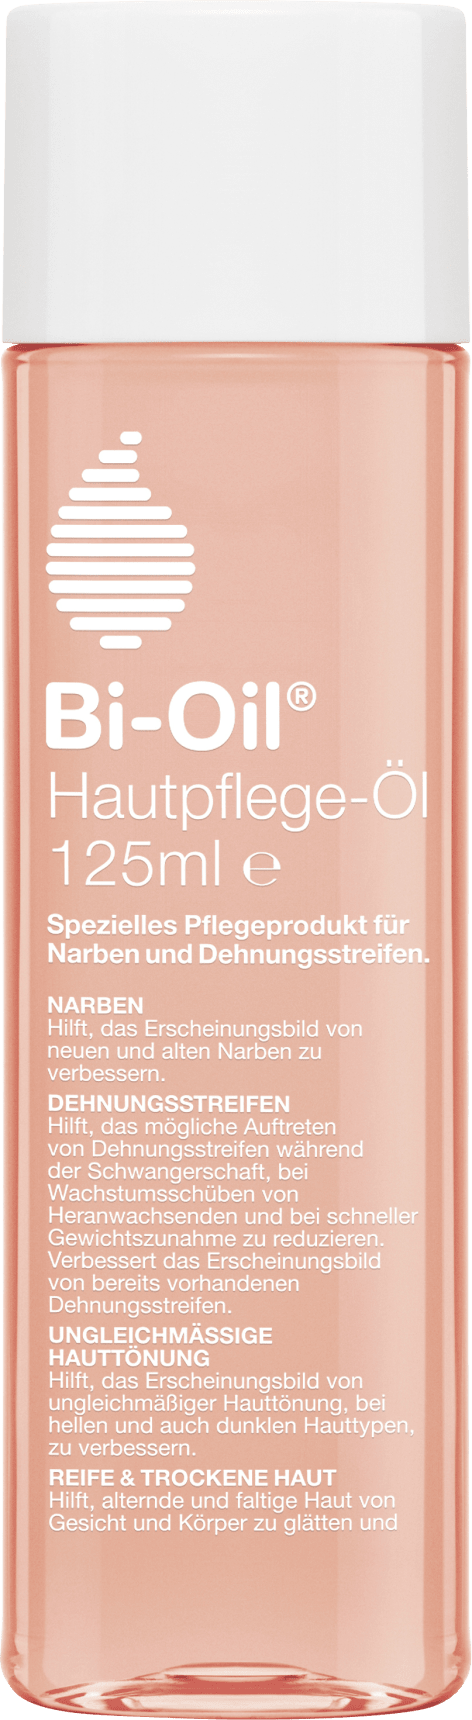 Body Oil, 125 Ml